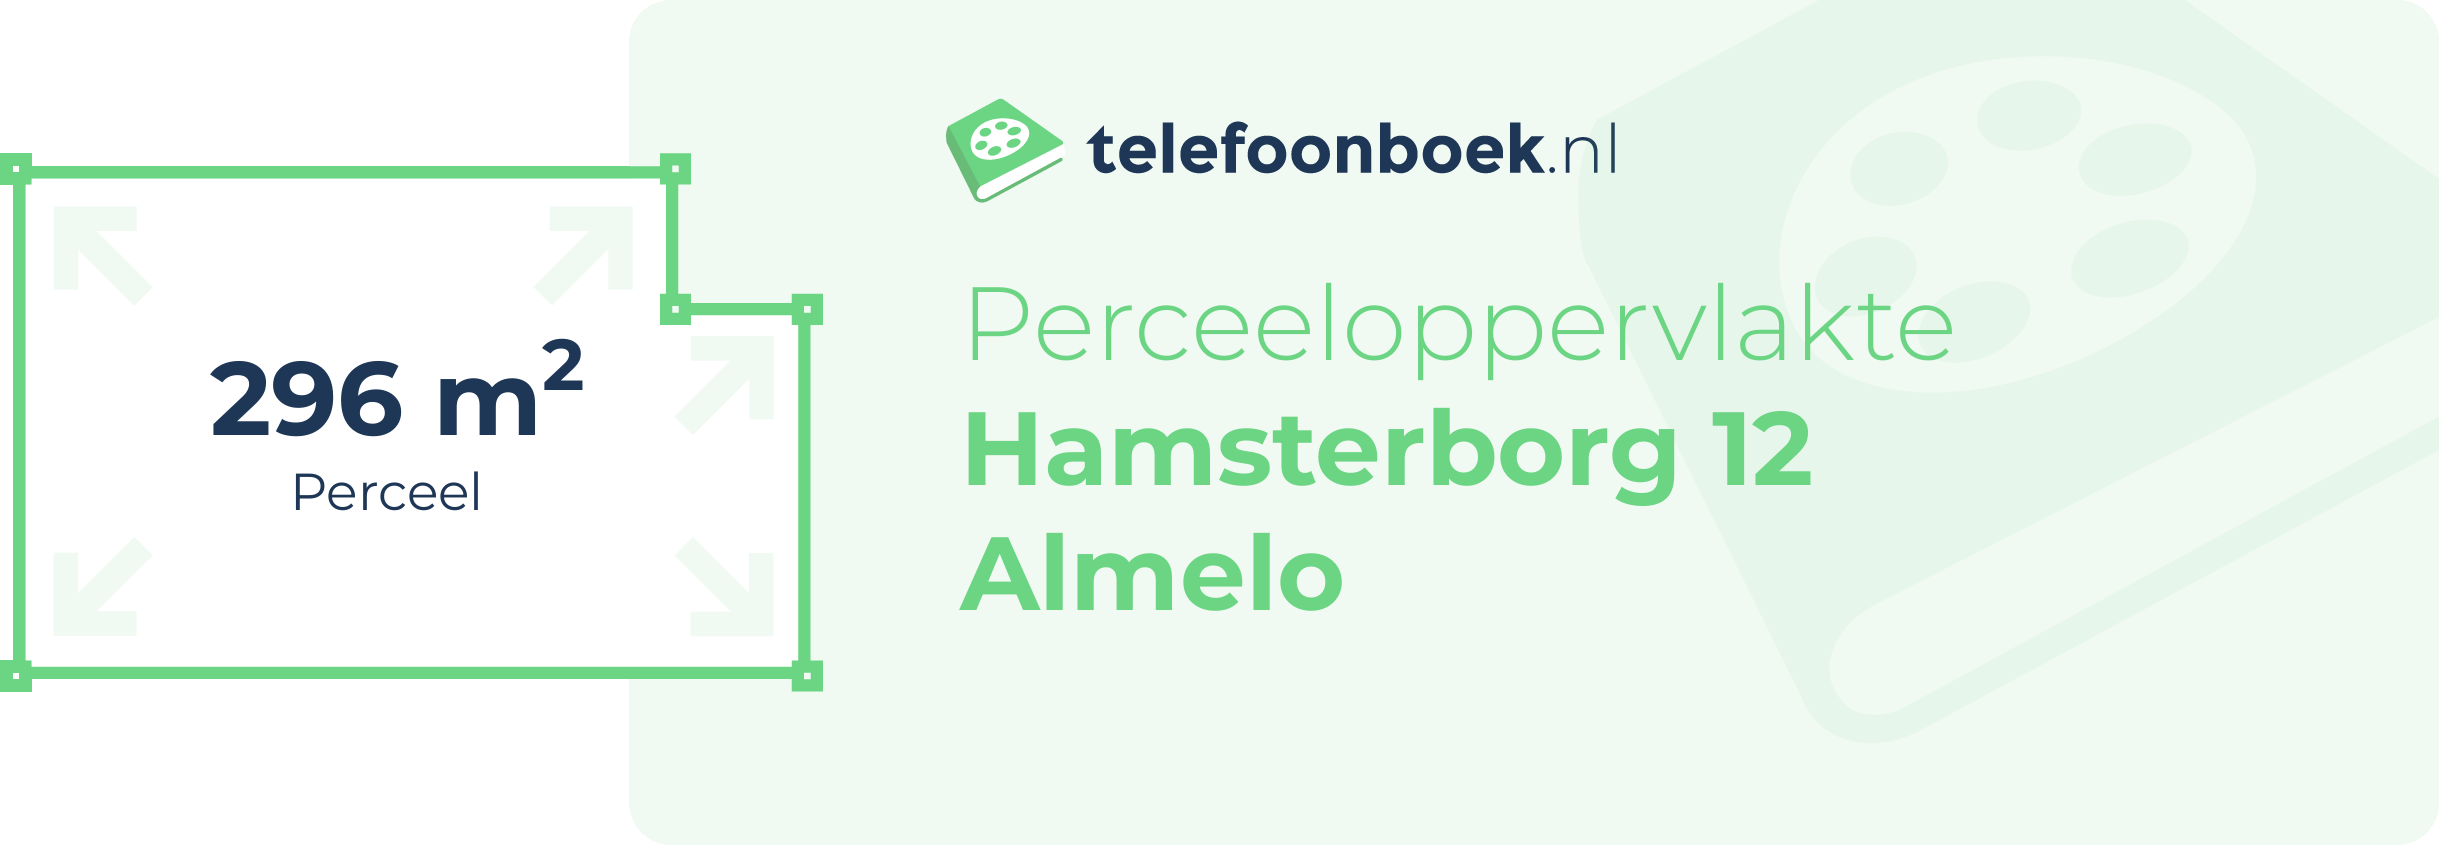 Perceeloppervlakte Hamsterborg 12 Almelo